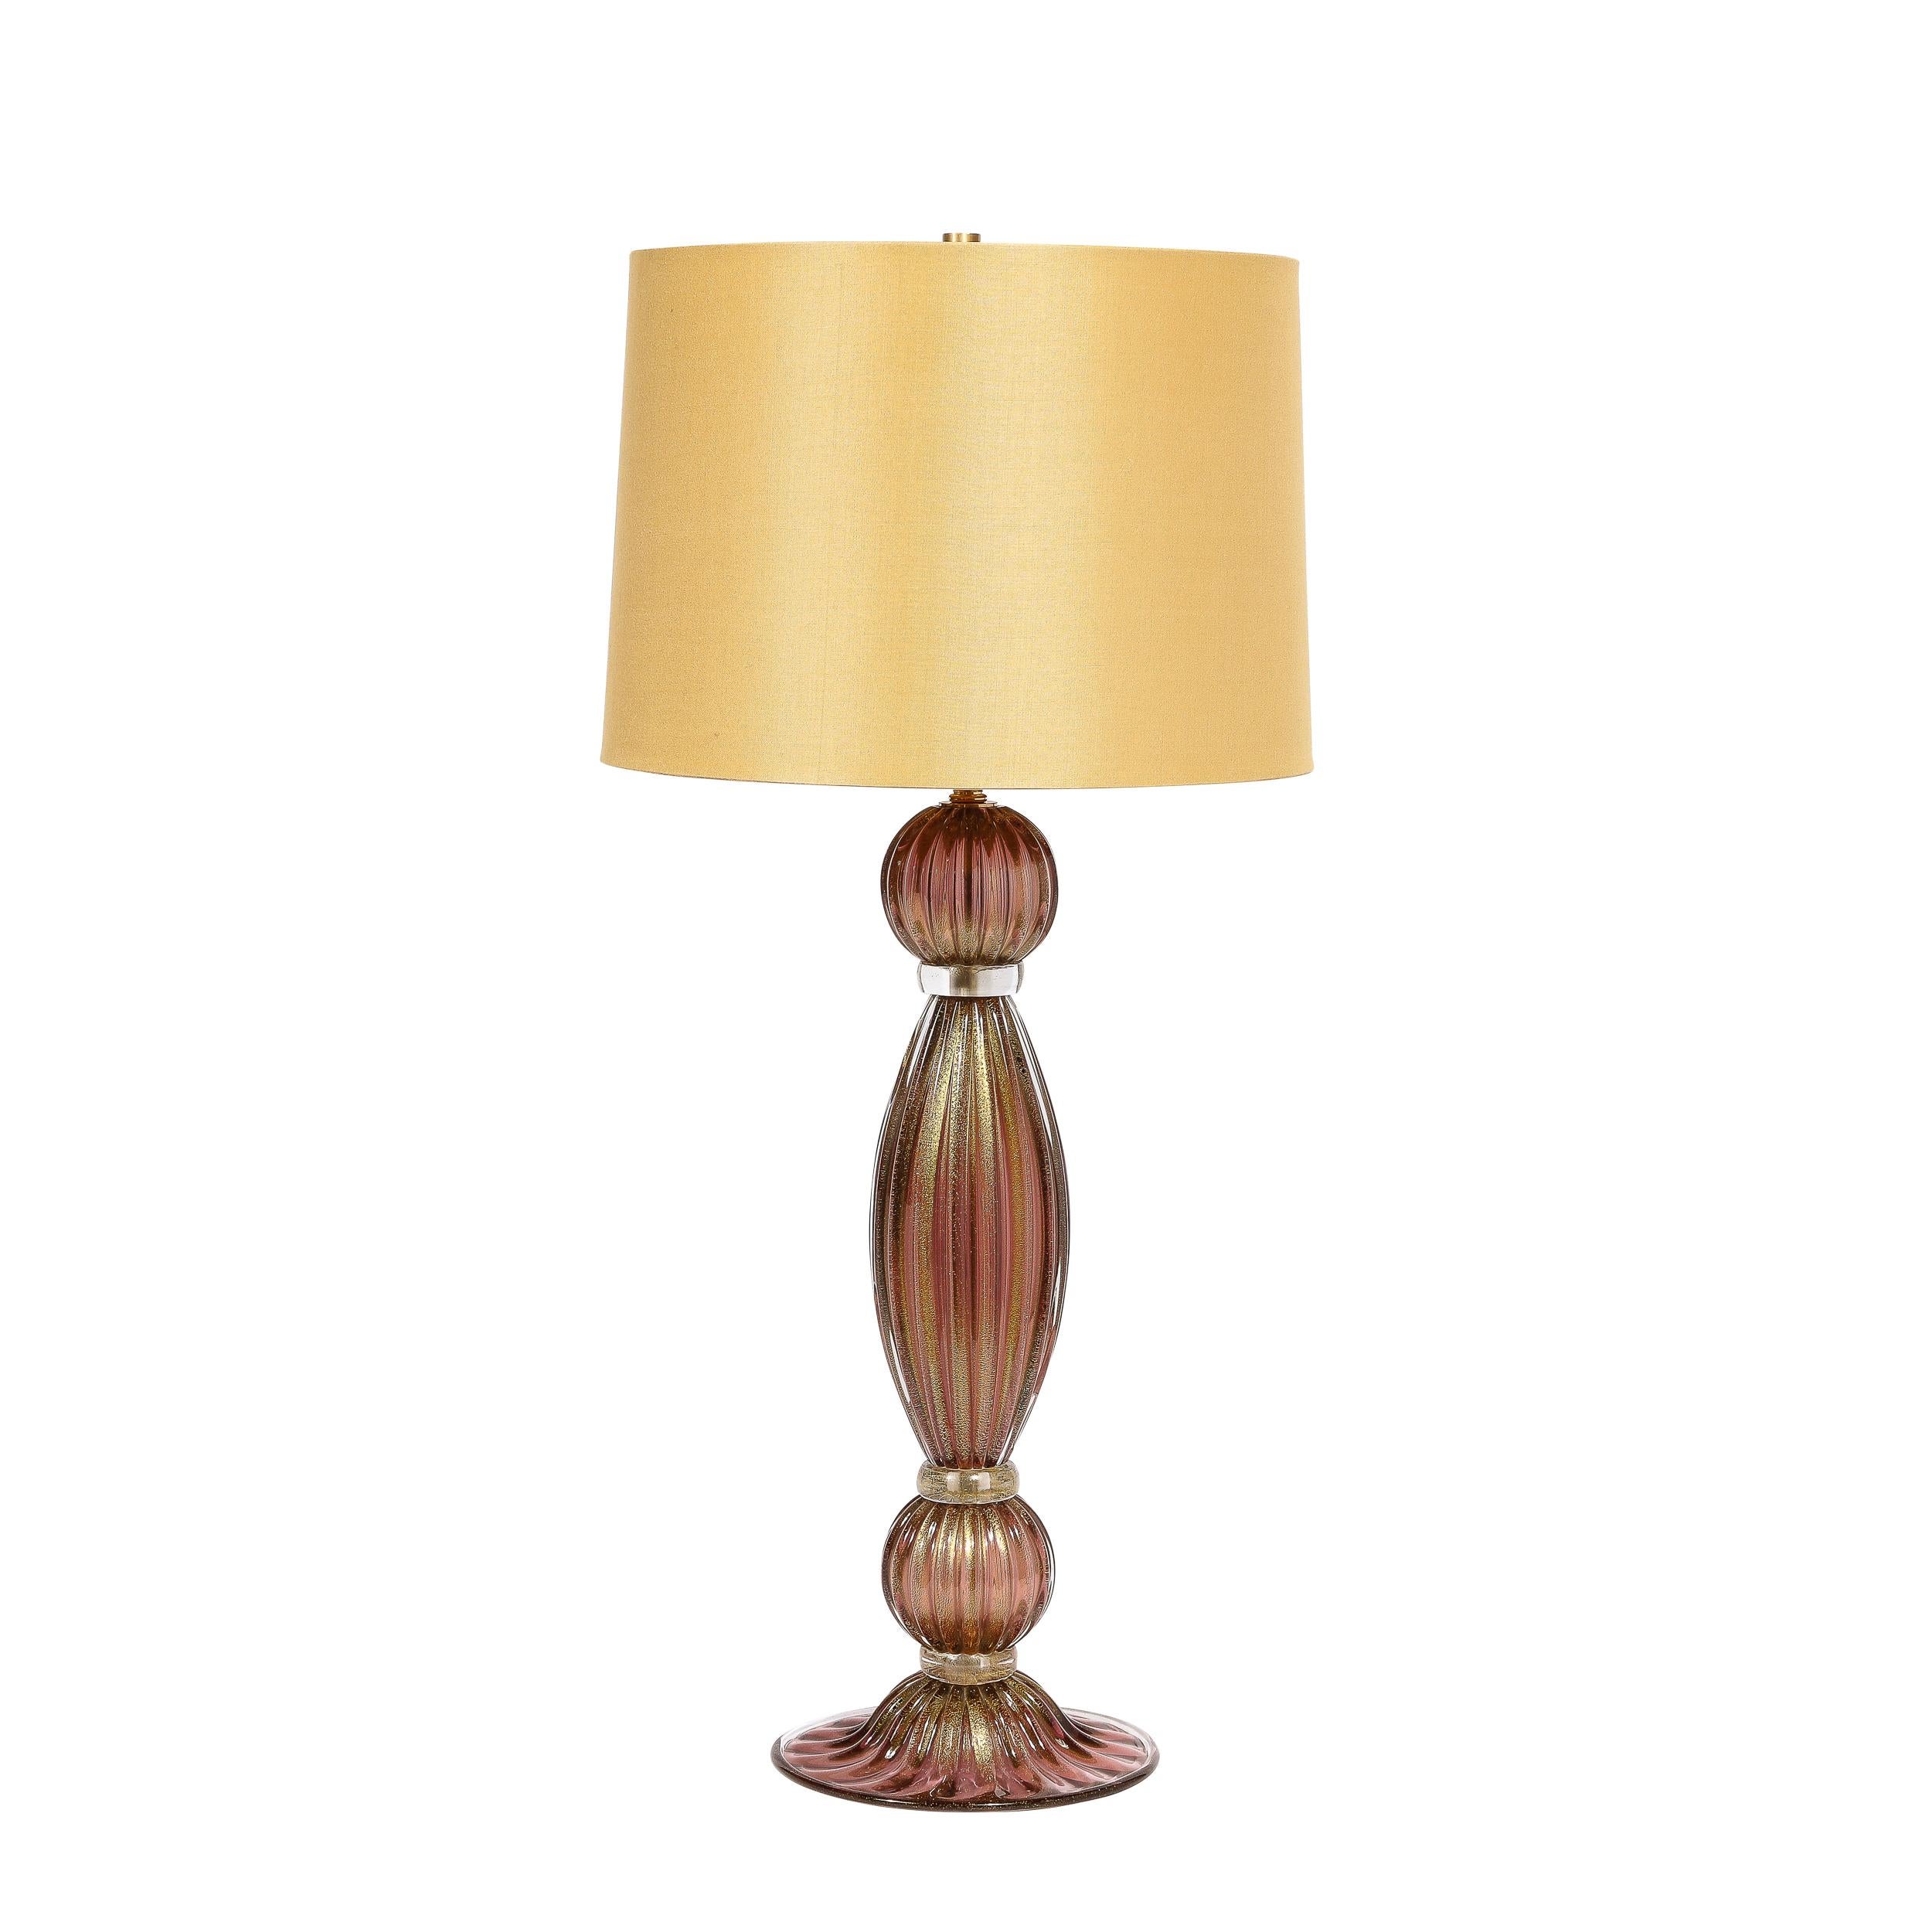 
Cette paire de lampes de table élégante et spectaculaire a été soufflée à la main à Murano, en Italie - l'île au large de Venise, réputée depuis des siècles pour sa production de verre de qualité supérieure. Ces corps cylindriques ondulants et